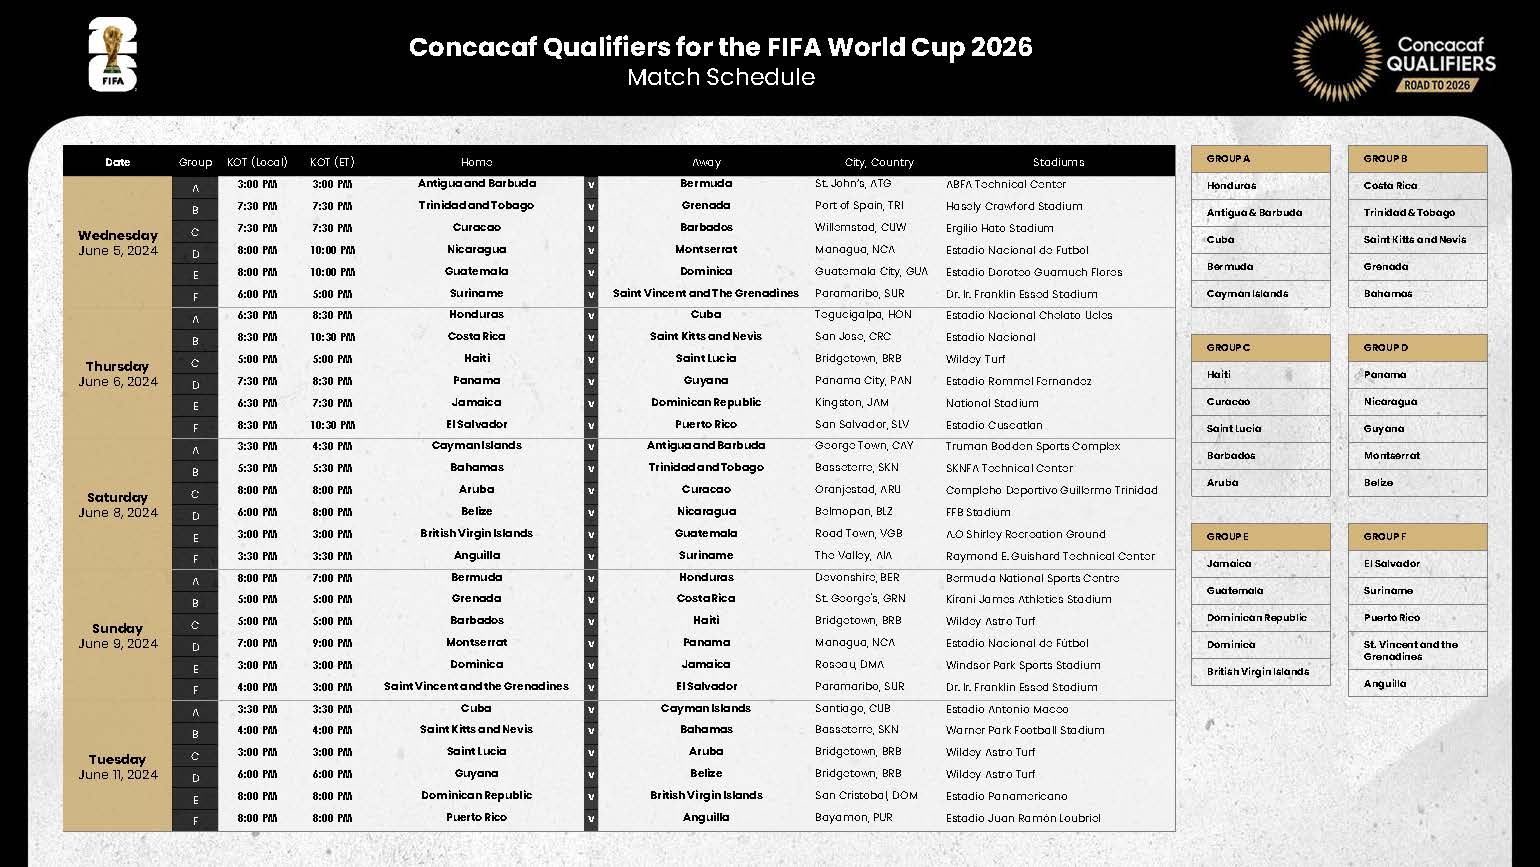 Calendario de partidos de la segunda ronda eliminatoria rumbo al Mundial de 2026.